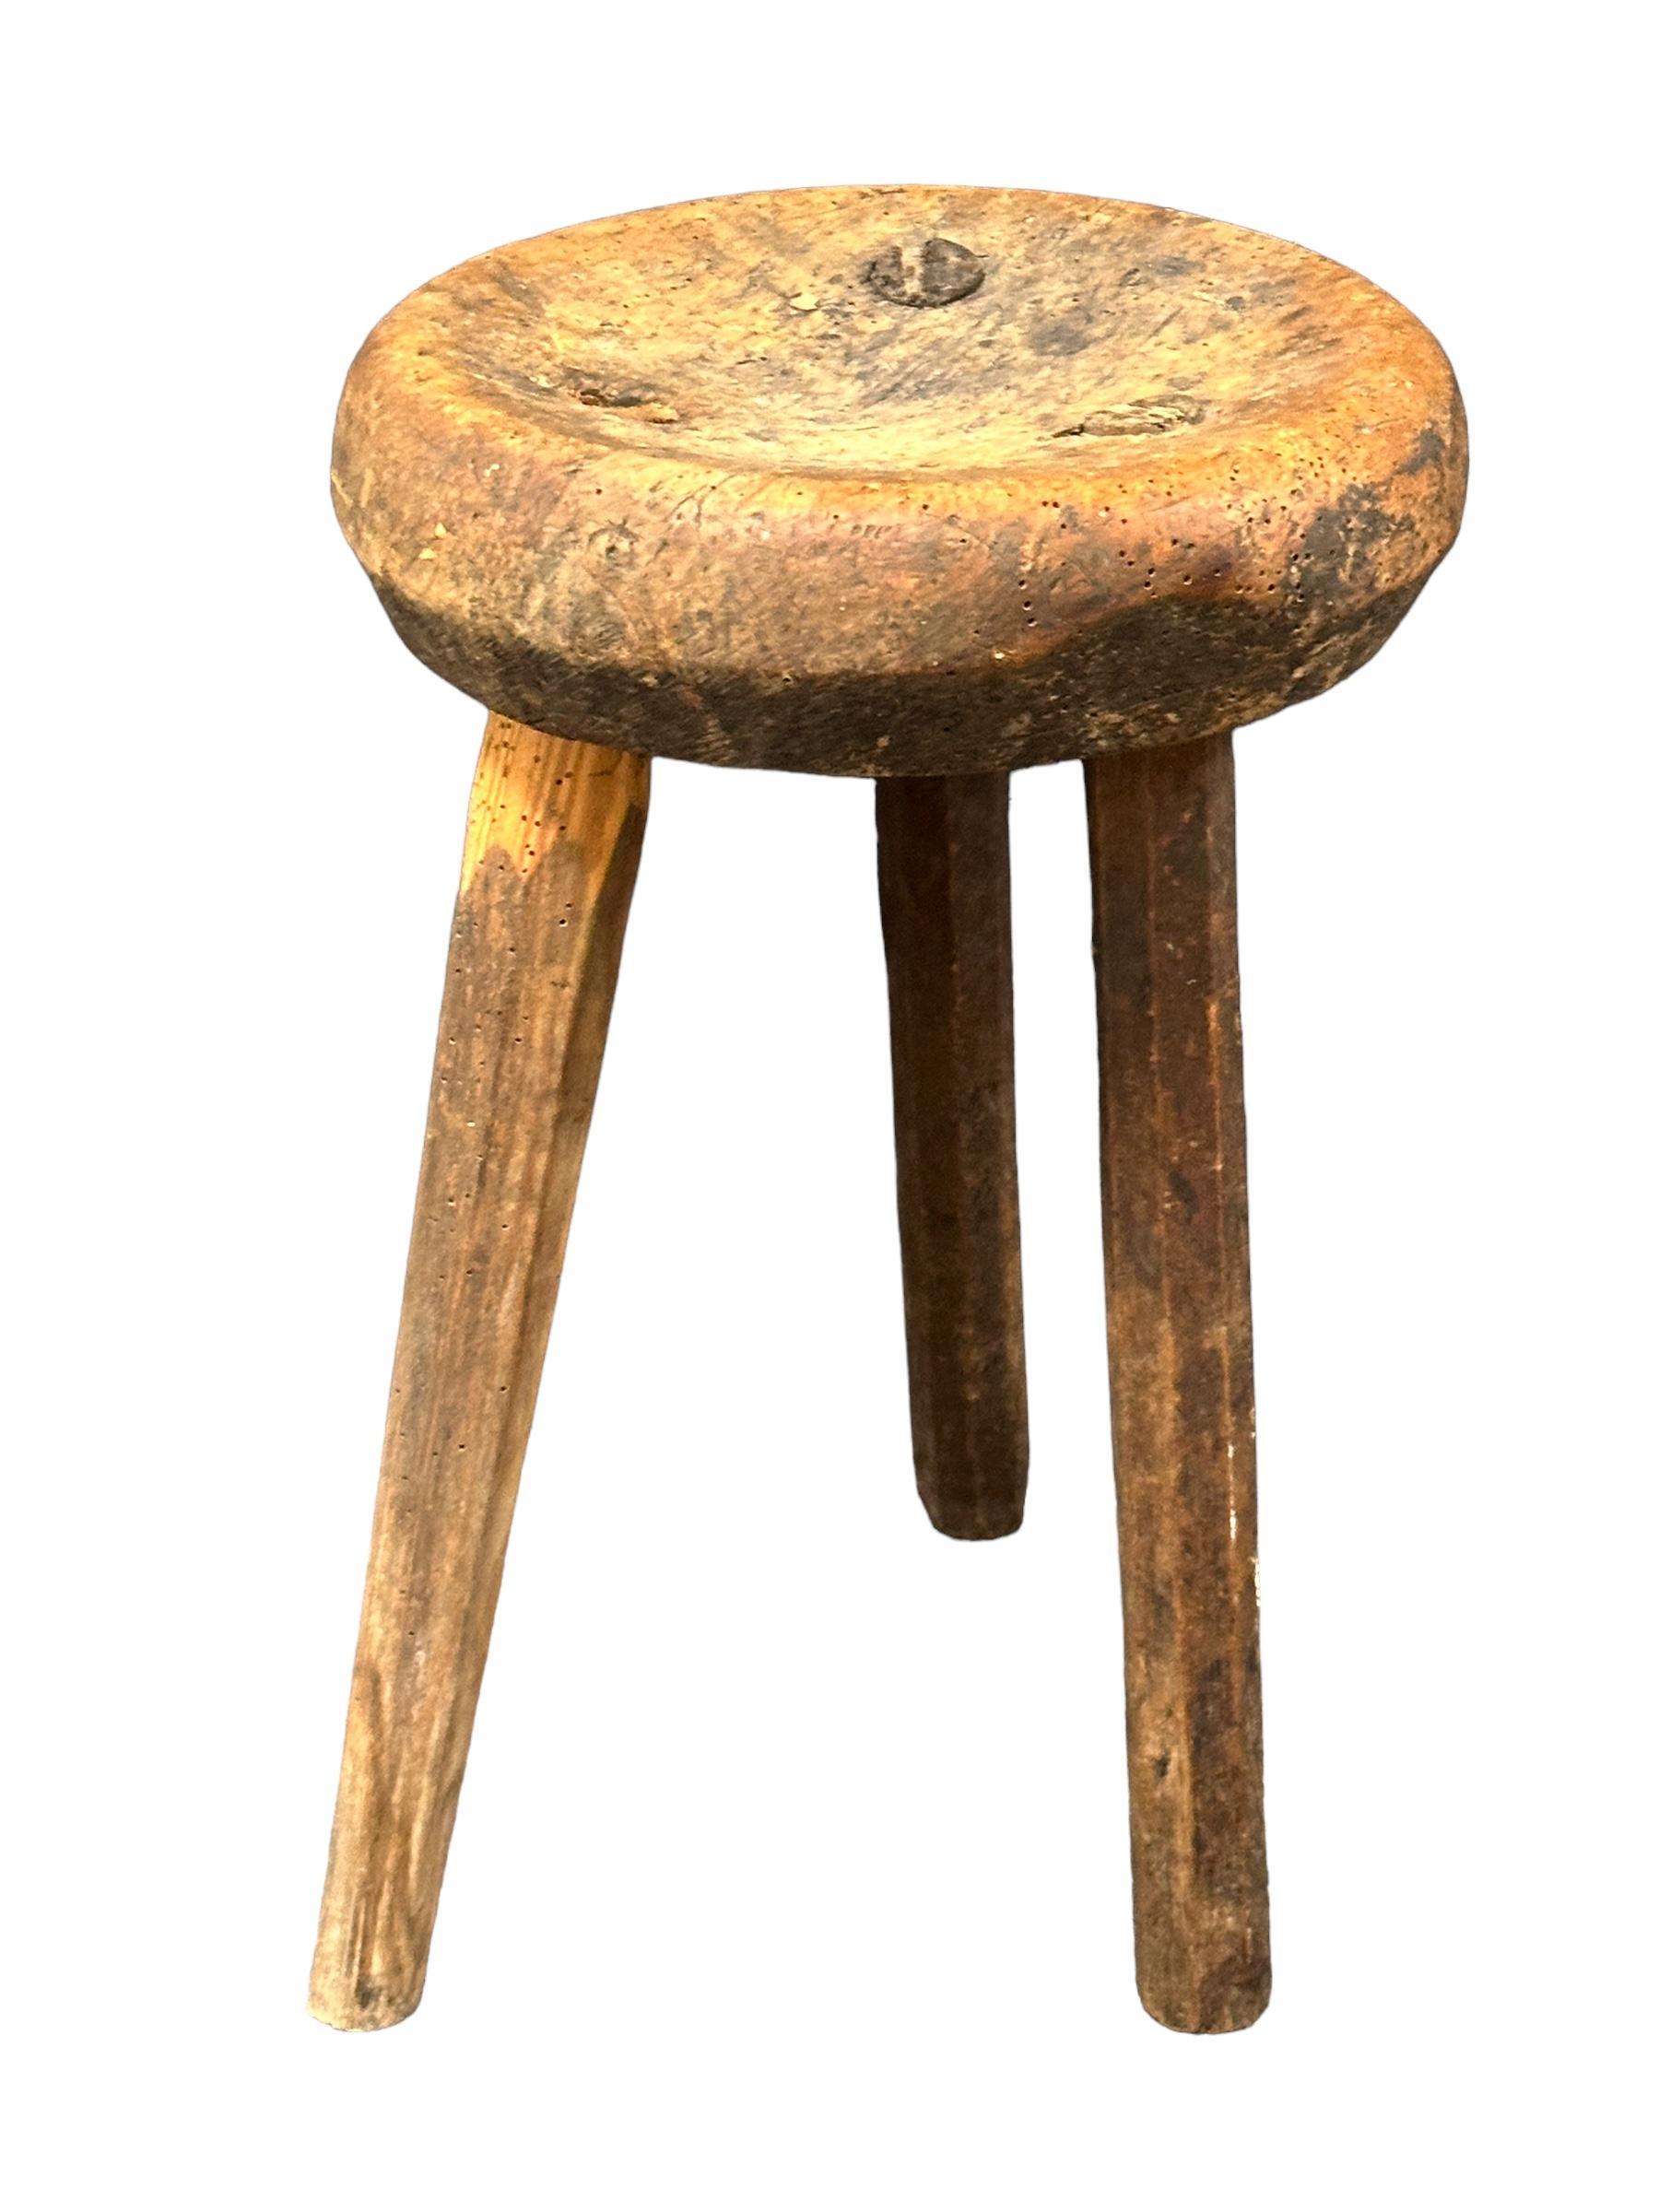 Ce tabouret d'atelier à trois pieds wabi sabi du début du 20e siècle, originaire d'Allemagne, est un excellent exemple de ce style. Le meuble est doté d'une assise carrée en bois d'aspect rustique et repose sur trois pieds. Le tabouret présente un